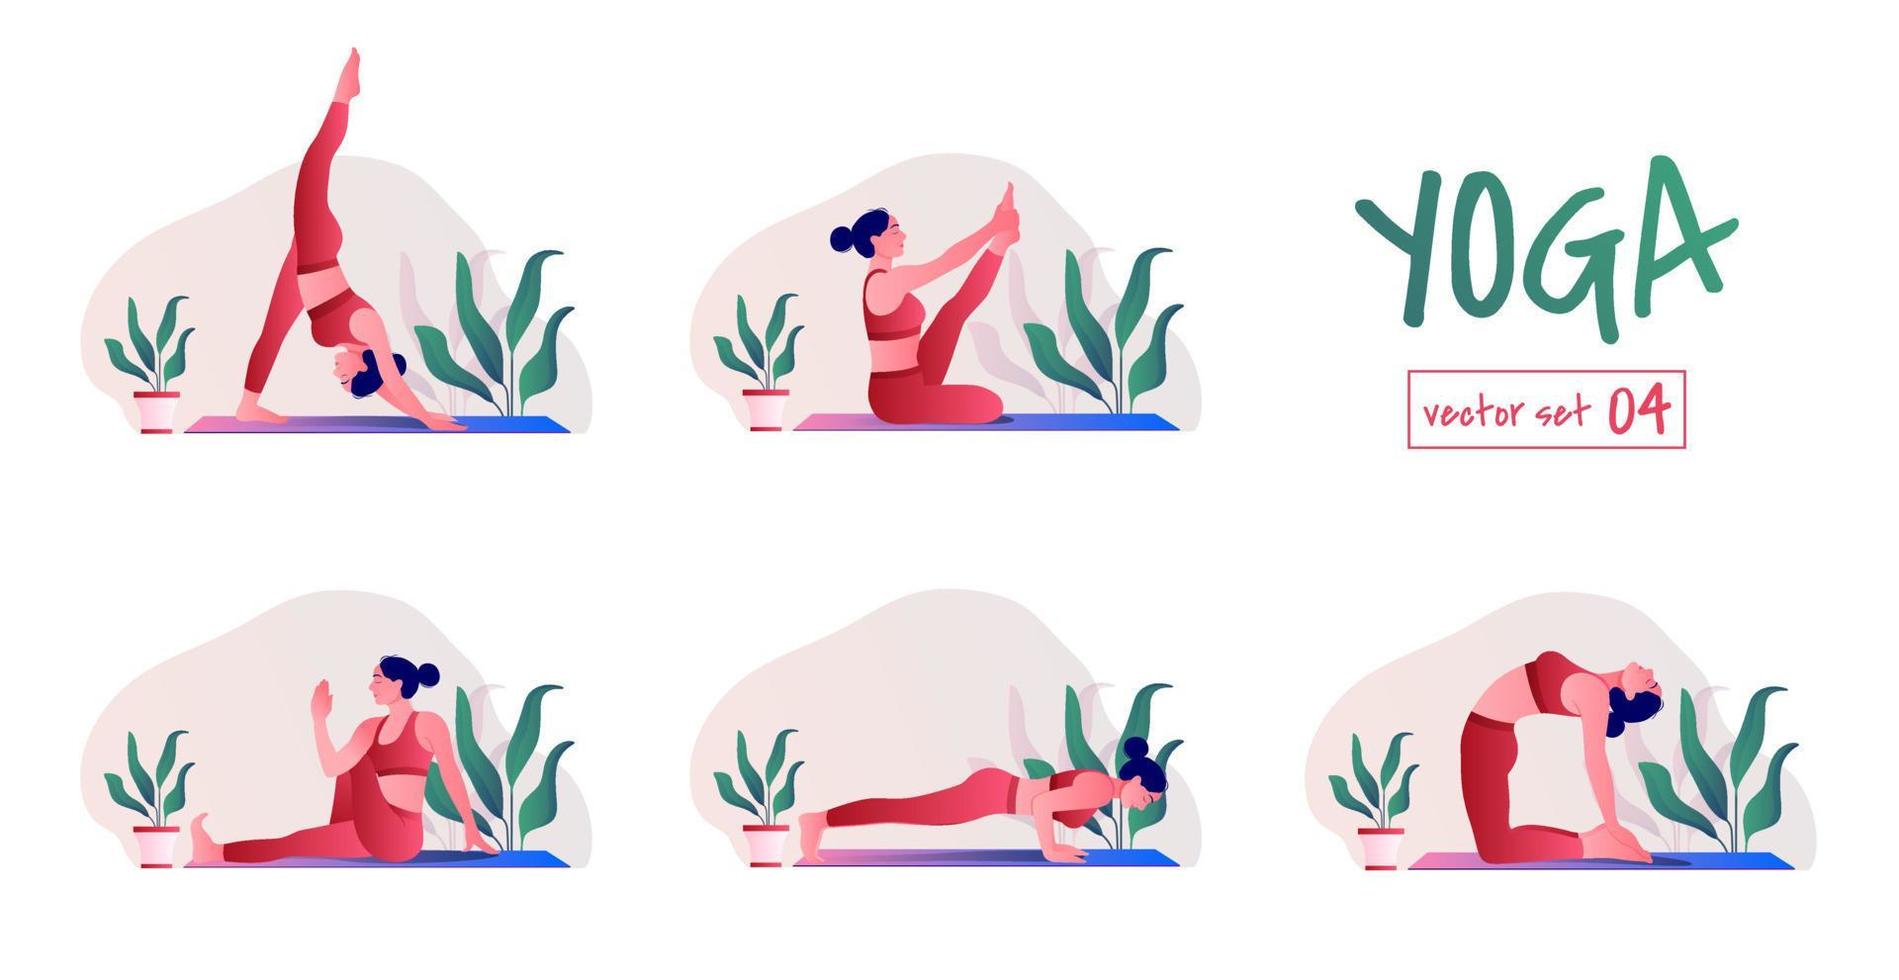 conjunto de ejercicios de yoga. mujer joven practicando posturas de yoga. mujer entrenamiento fitness, aeróbicos y ejercicios. vector